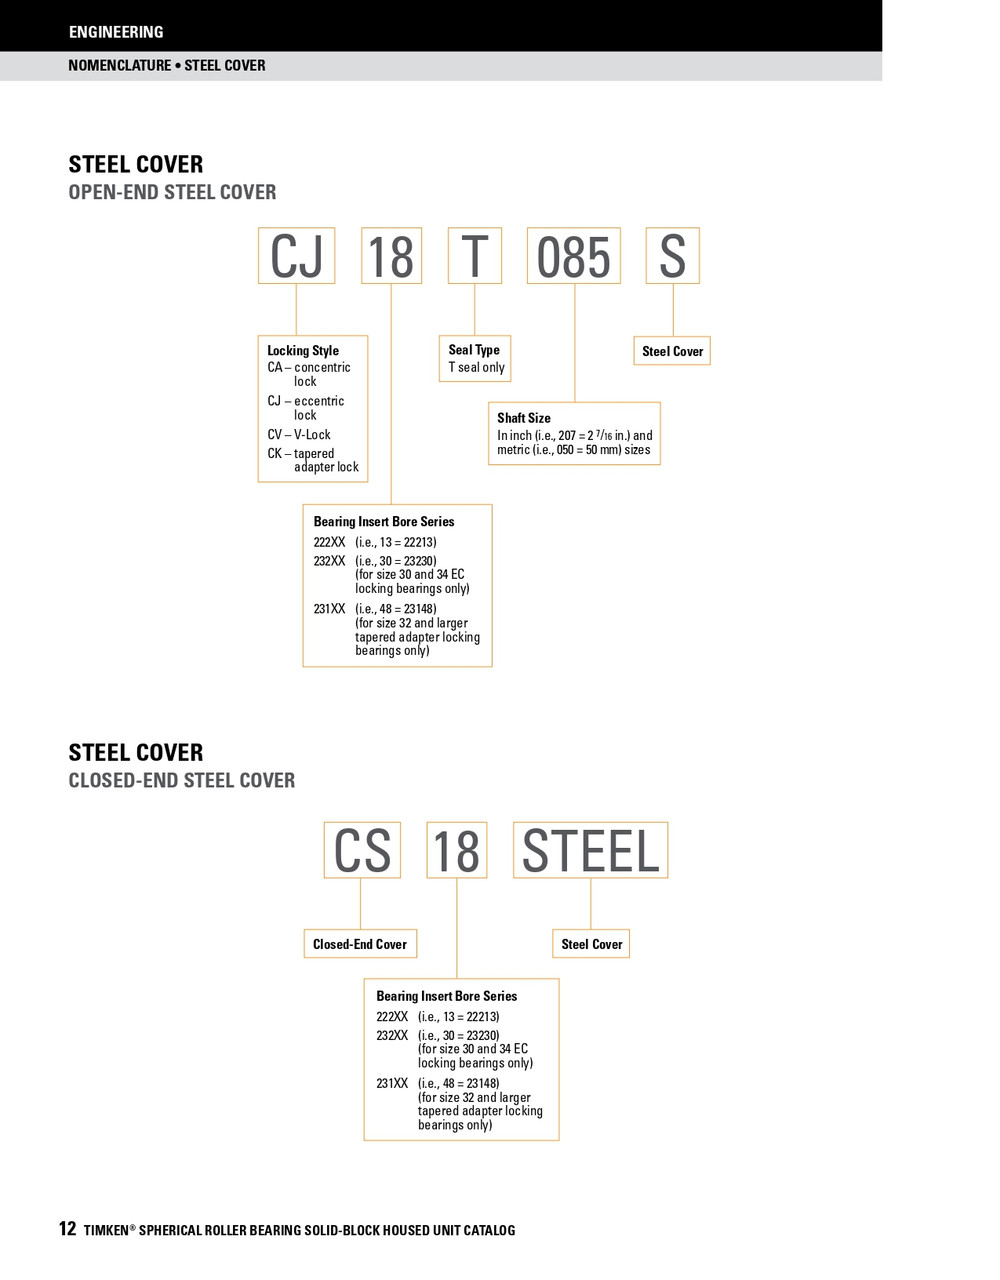 4-1/2" Timken SRB Steel Open End Cover w/Teflon Seal - TA/DV Taper Lock Bushing Type  CK26T408S